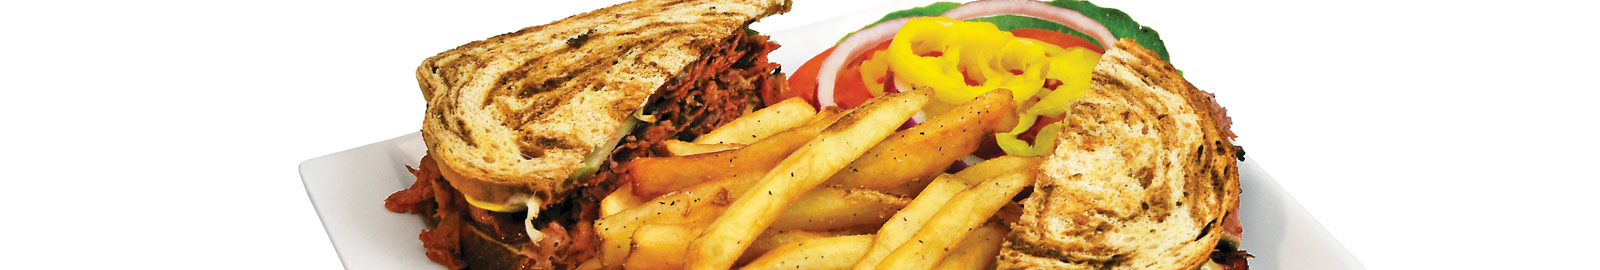 Rueben Sandwich with Fries